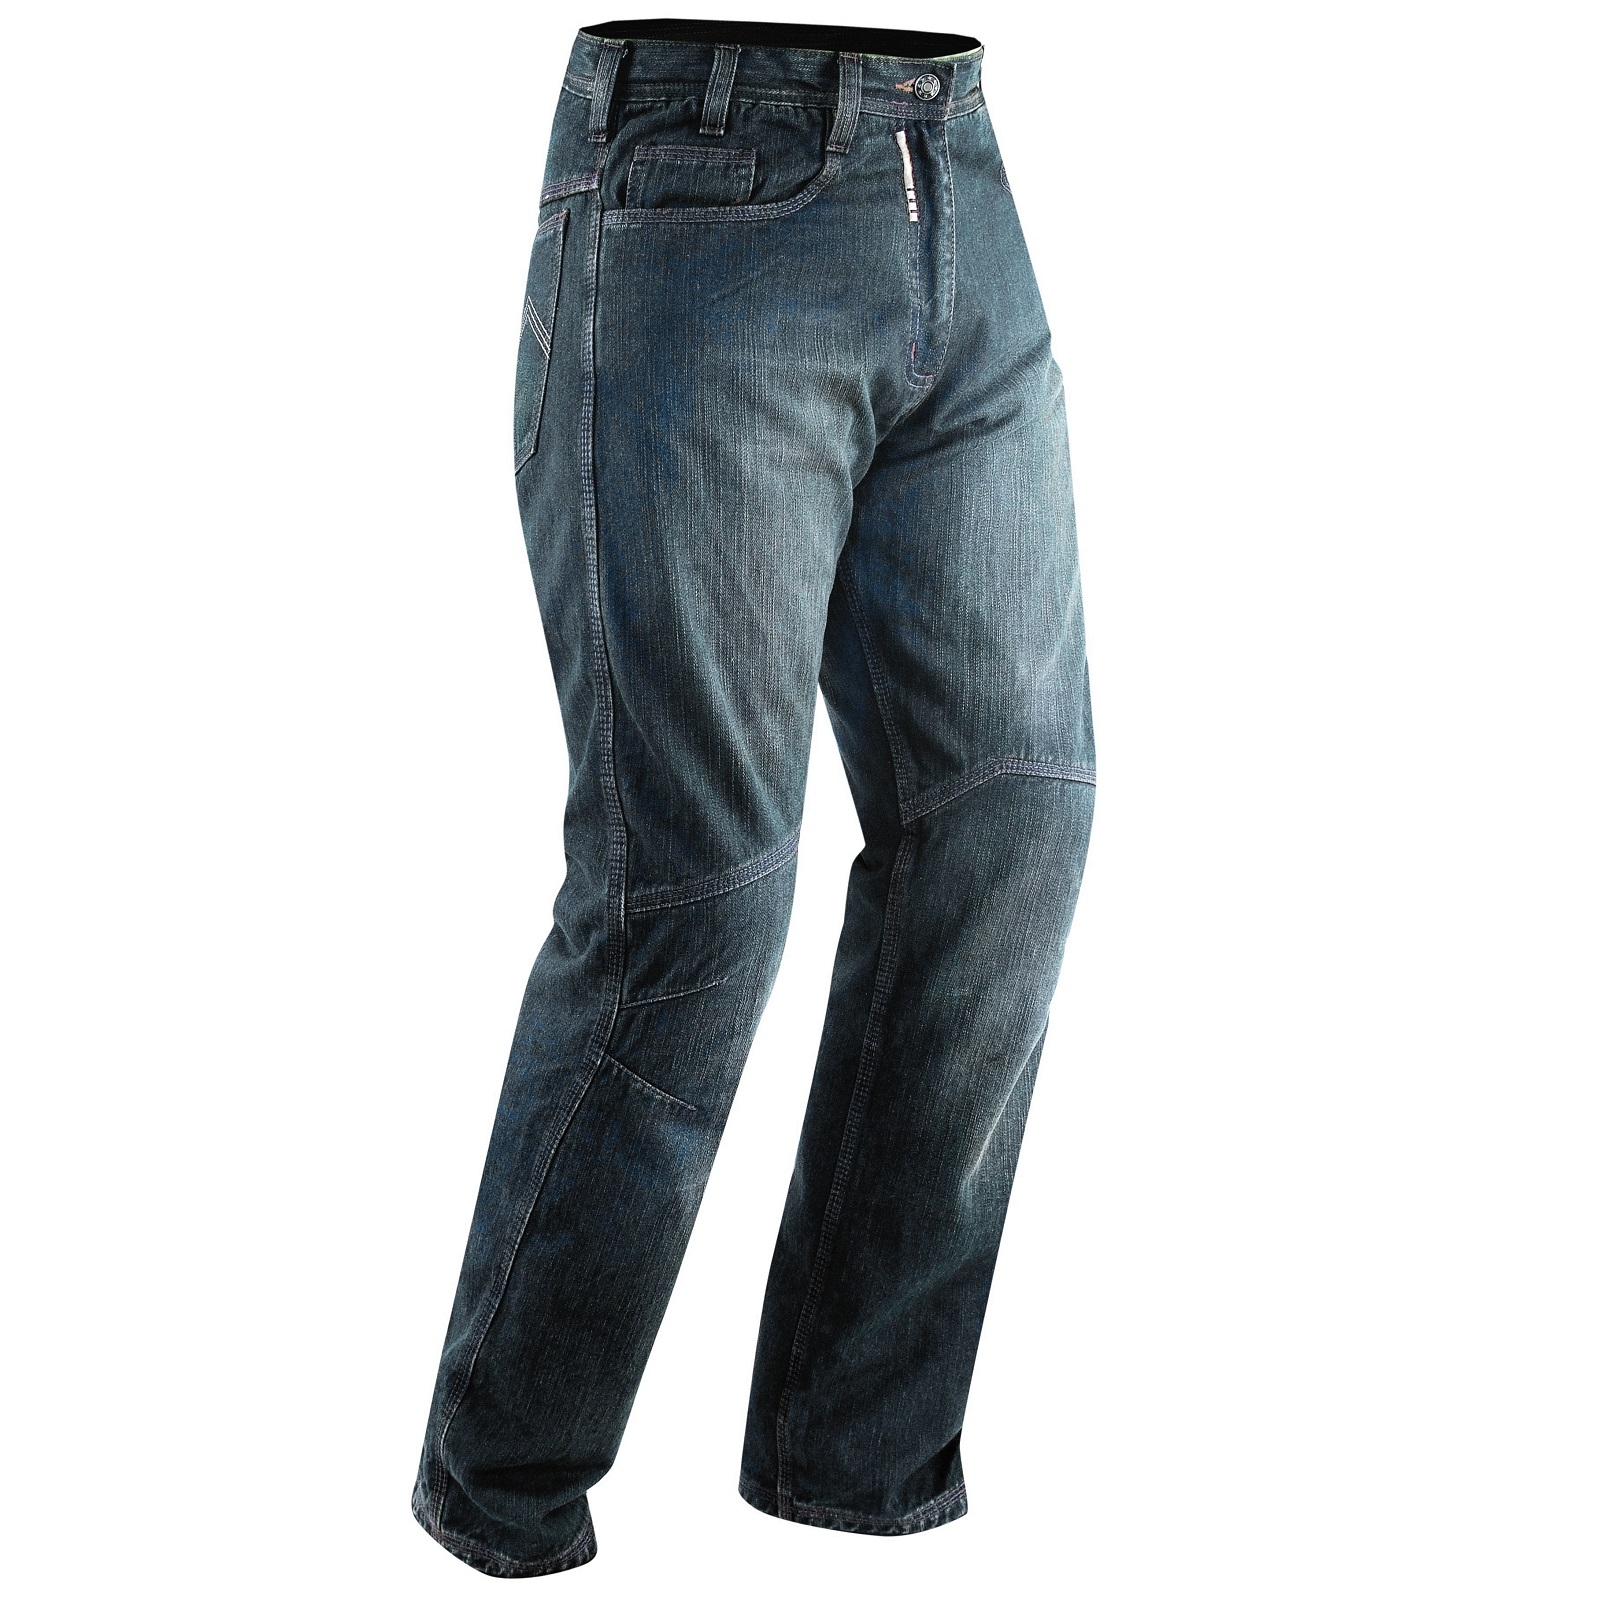 Abbigliamento Moto e Accessori - Jeans Moto Pantaloni Protecioni